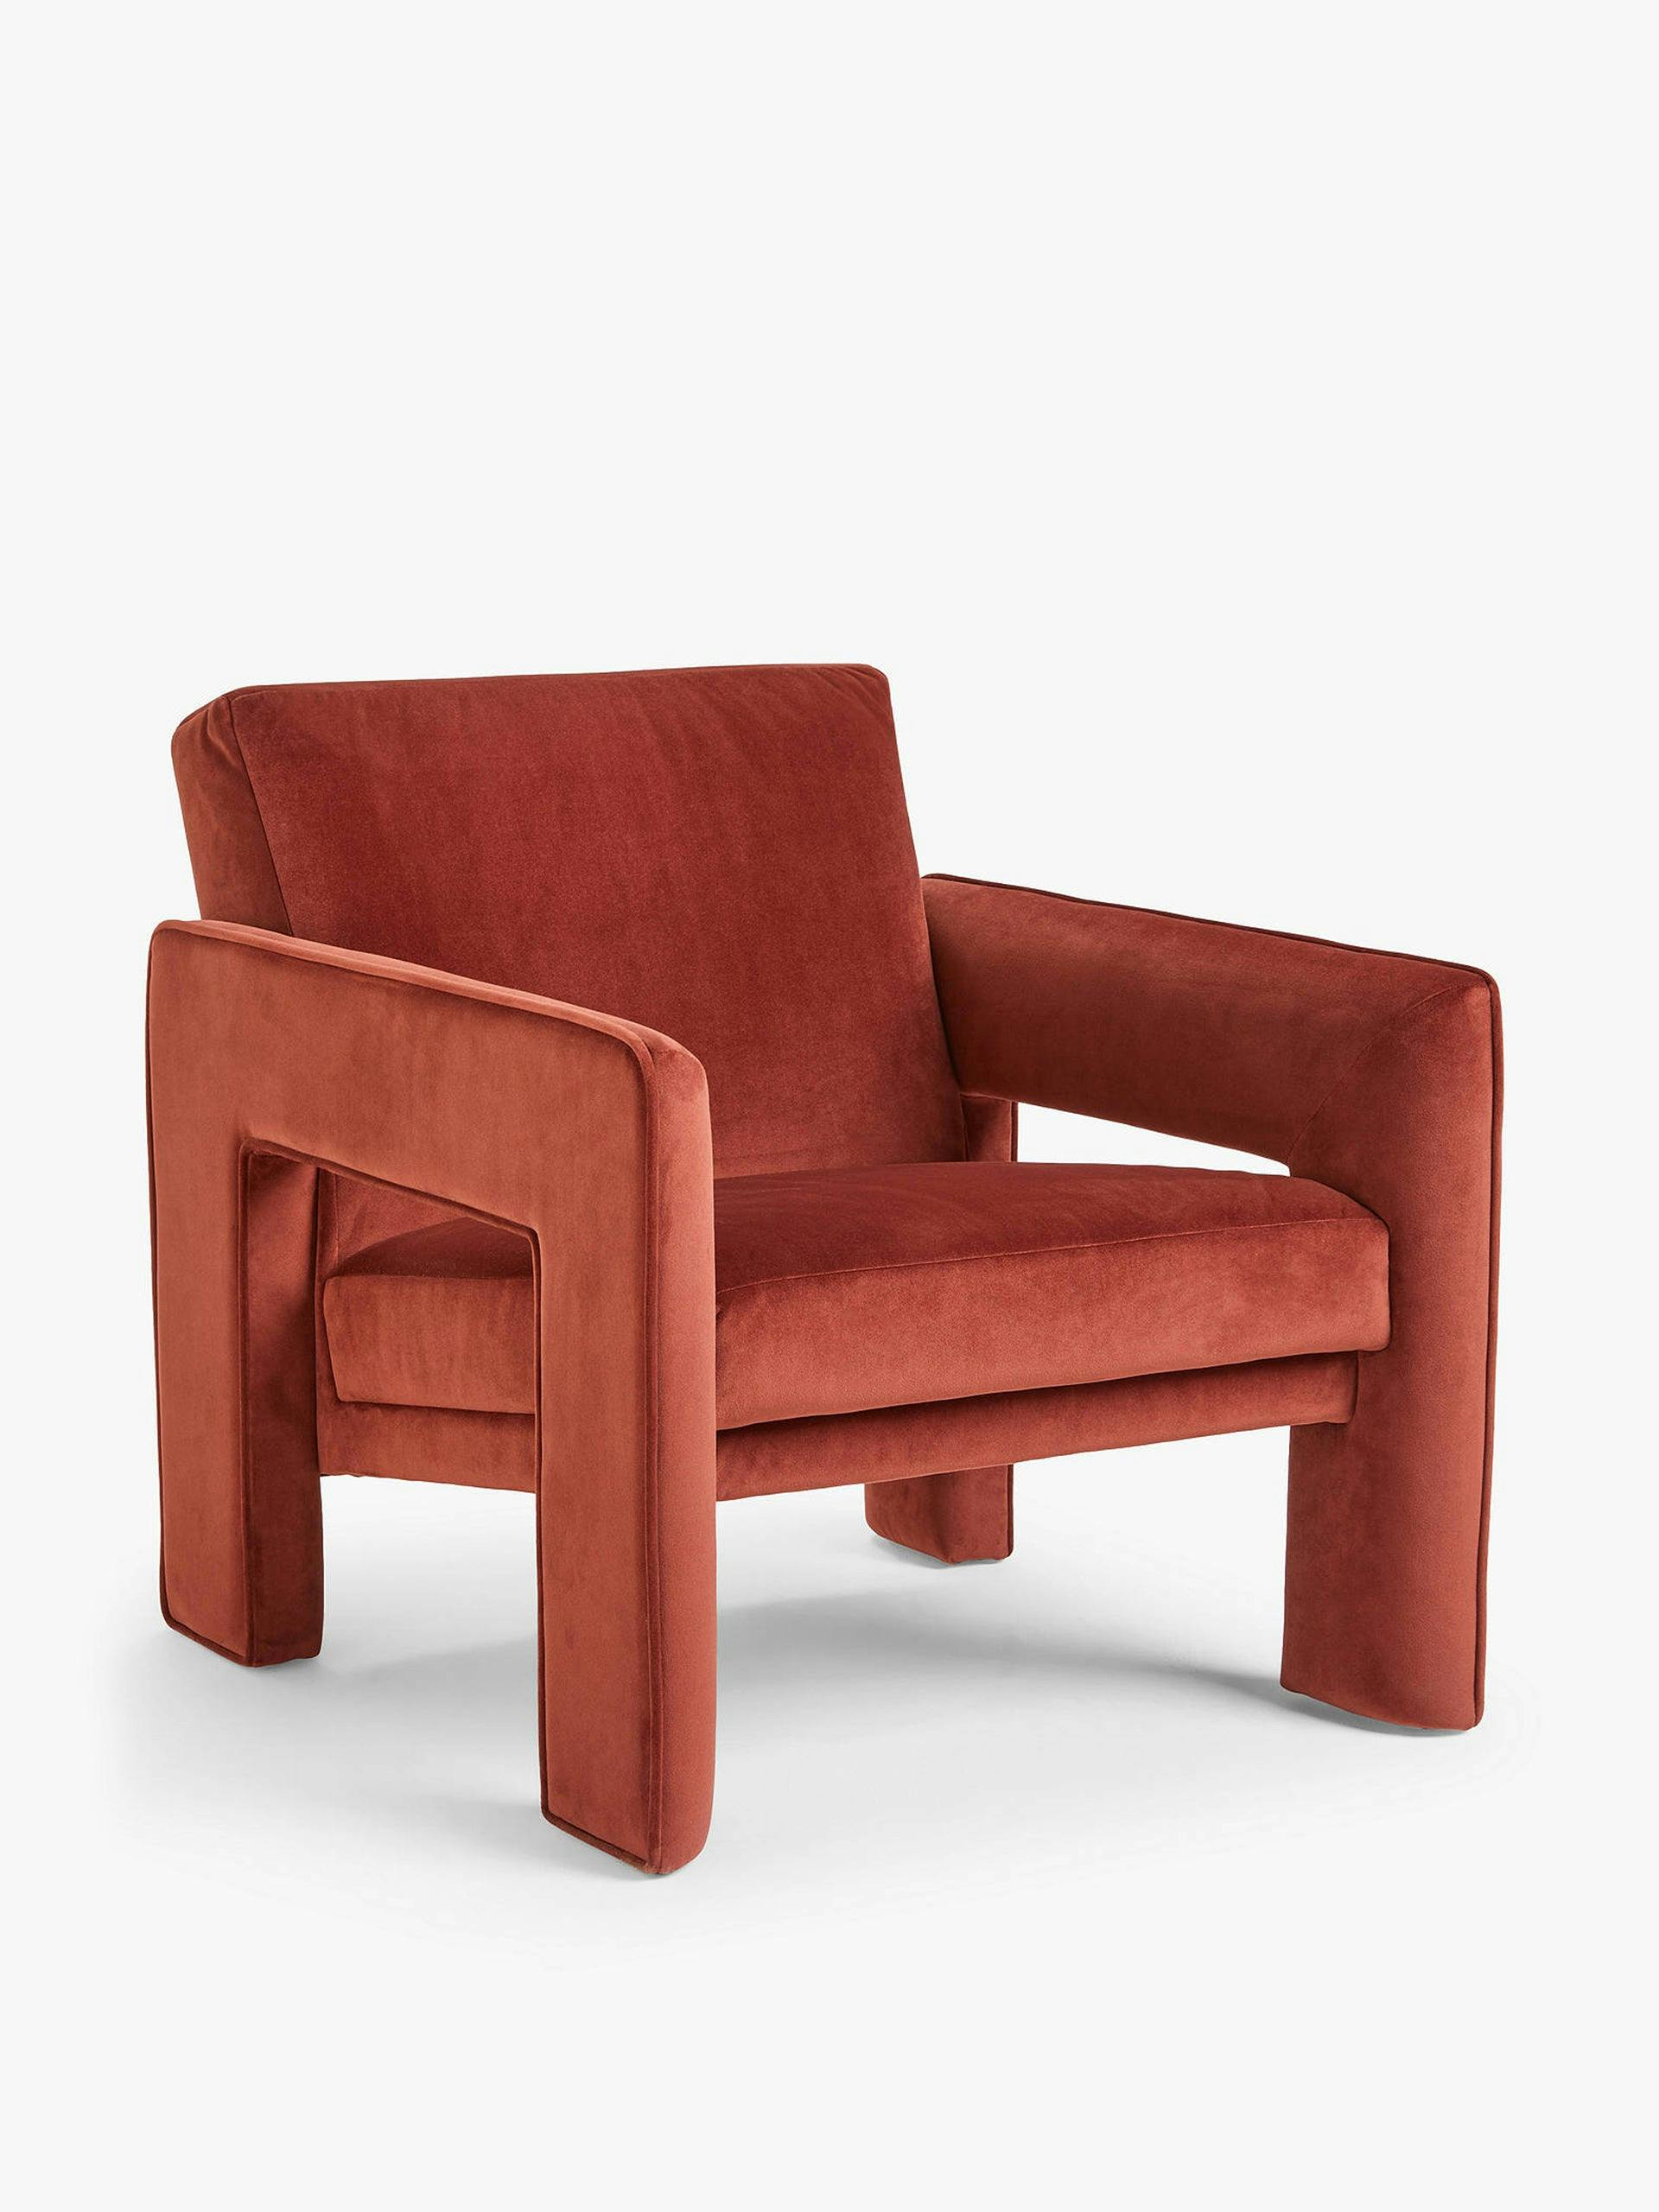 Blocky armchair